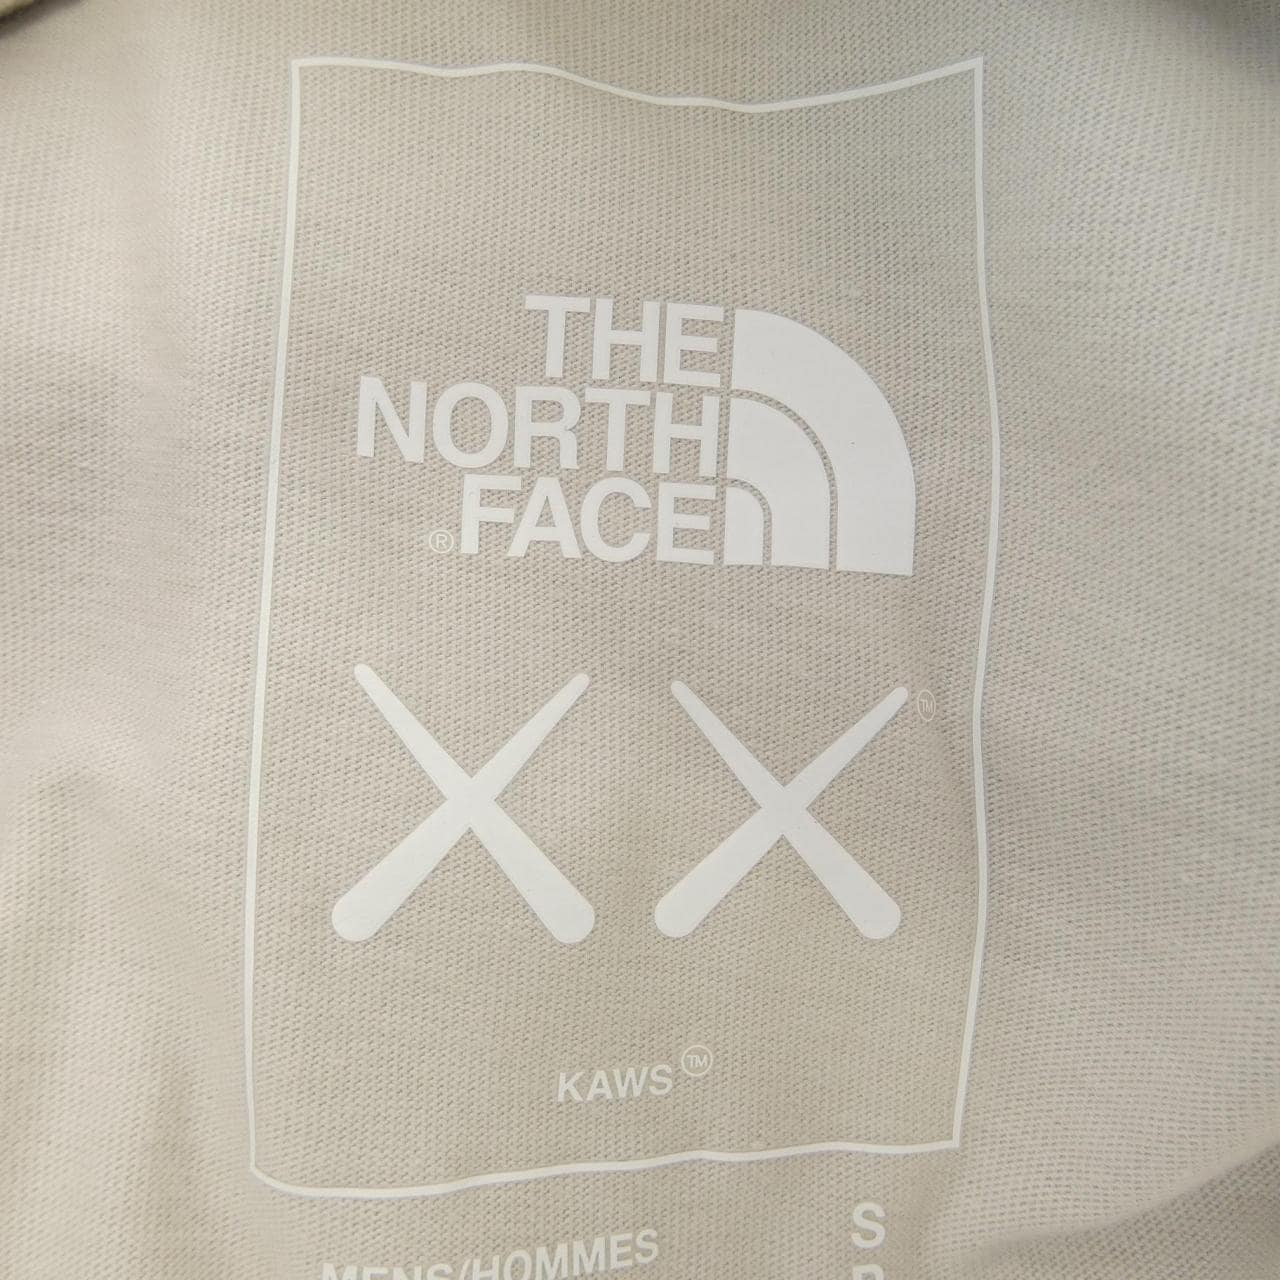 ザノースフェイス THE NORTH FACE Tシャツ